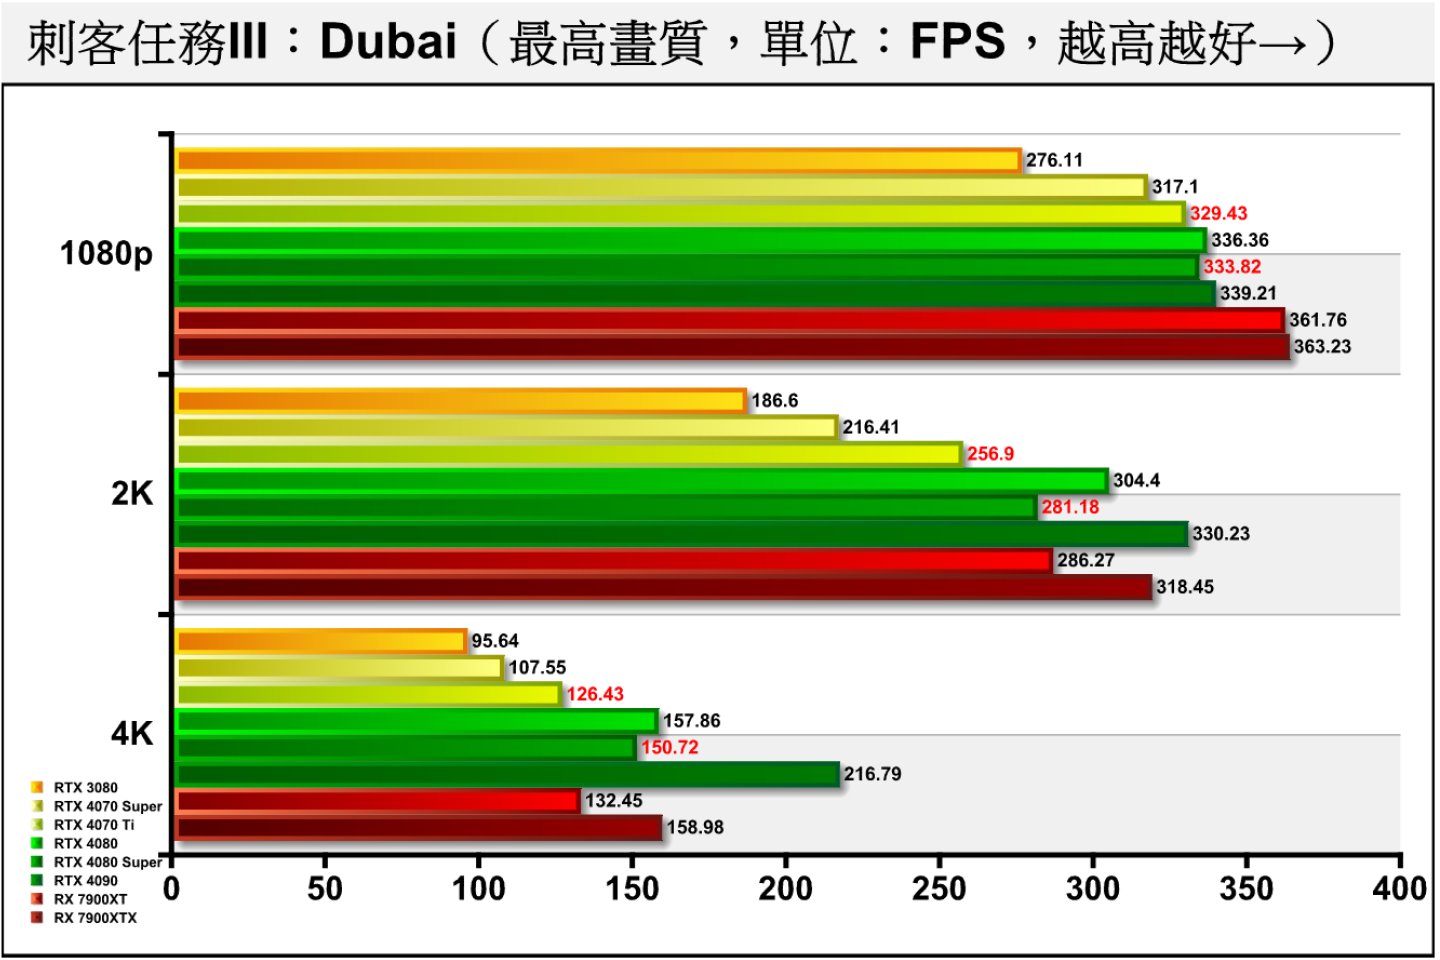 《刺客任務III》Dubai（杜拜）測試項目包含多種場景與NPC角色，整體負擔較低，RTX 4080 Super的表現比較不理想。